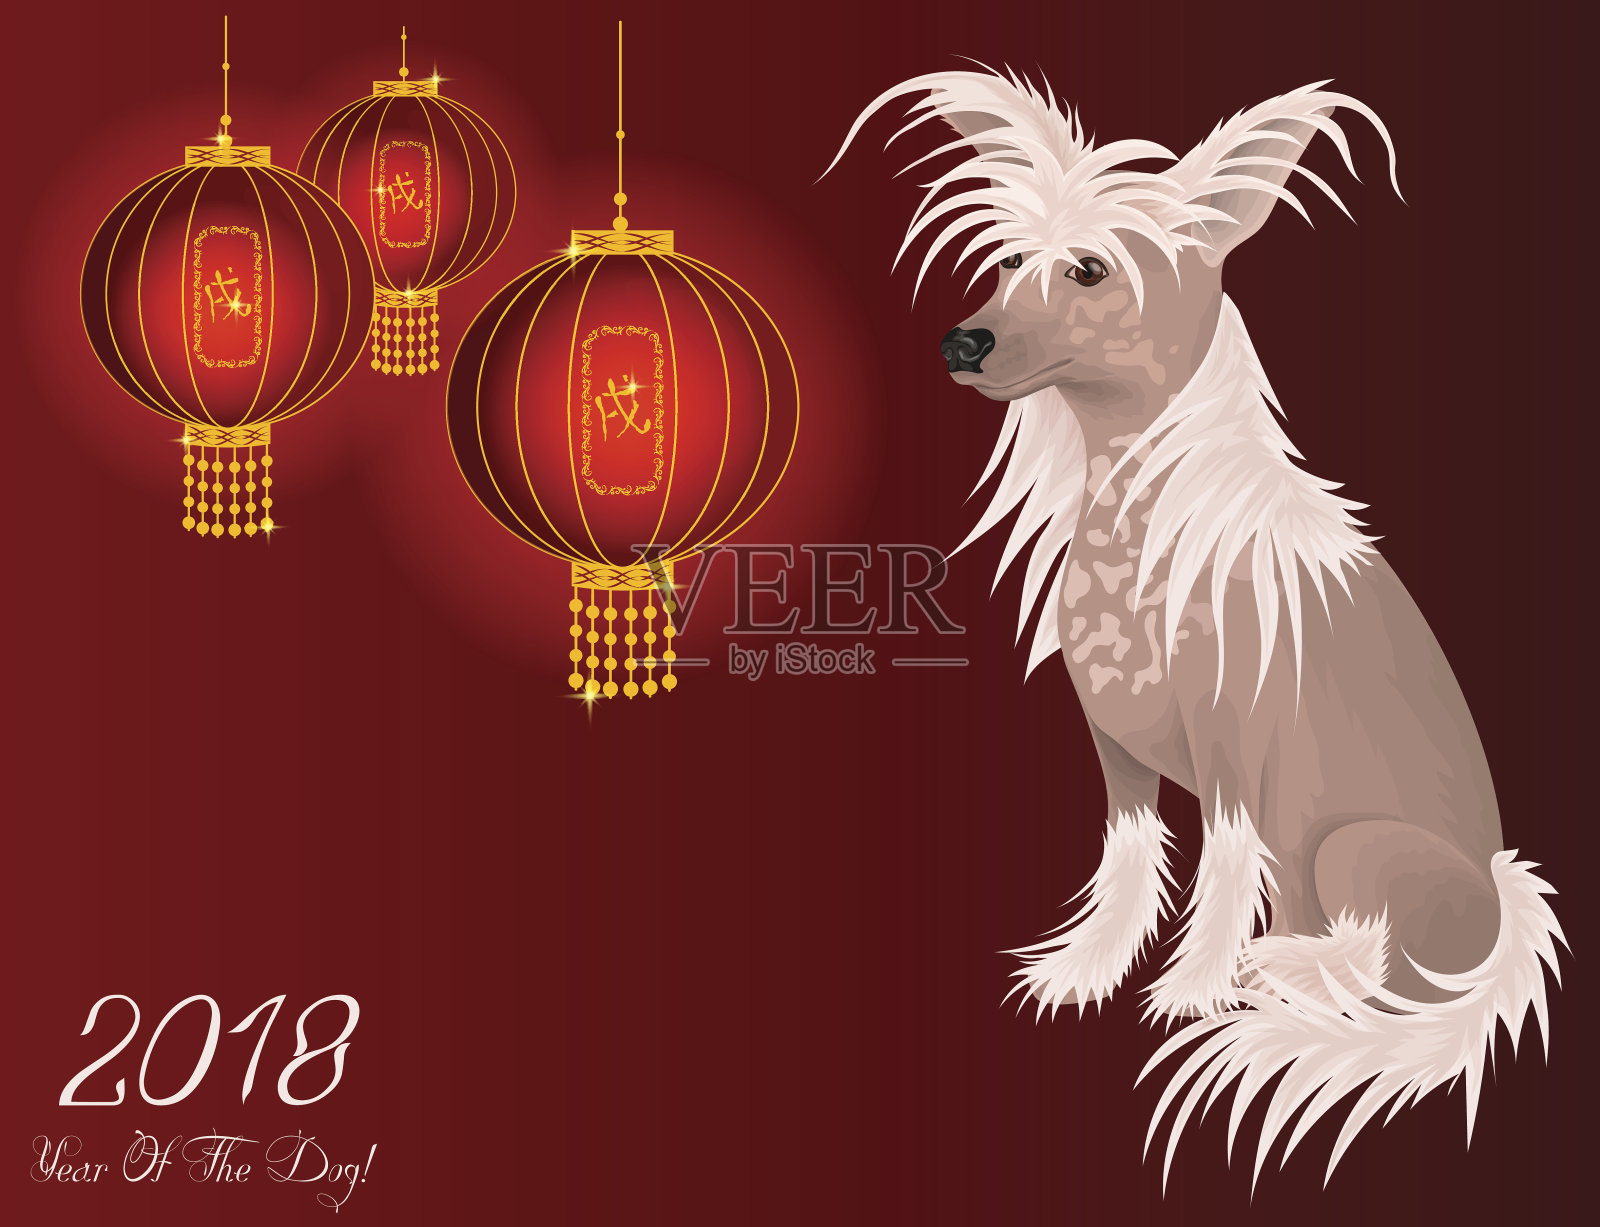 土狗是中国生肖历法中2018年的象征。插画图片素材